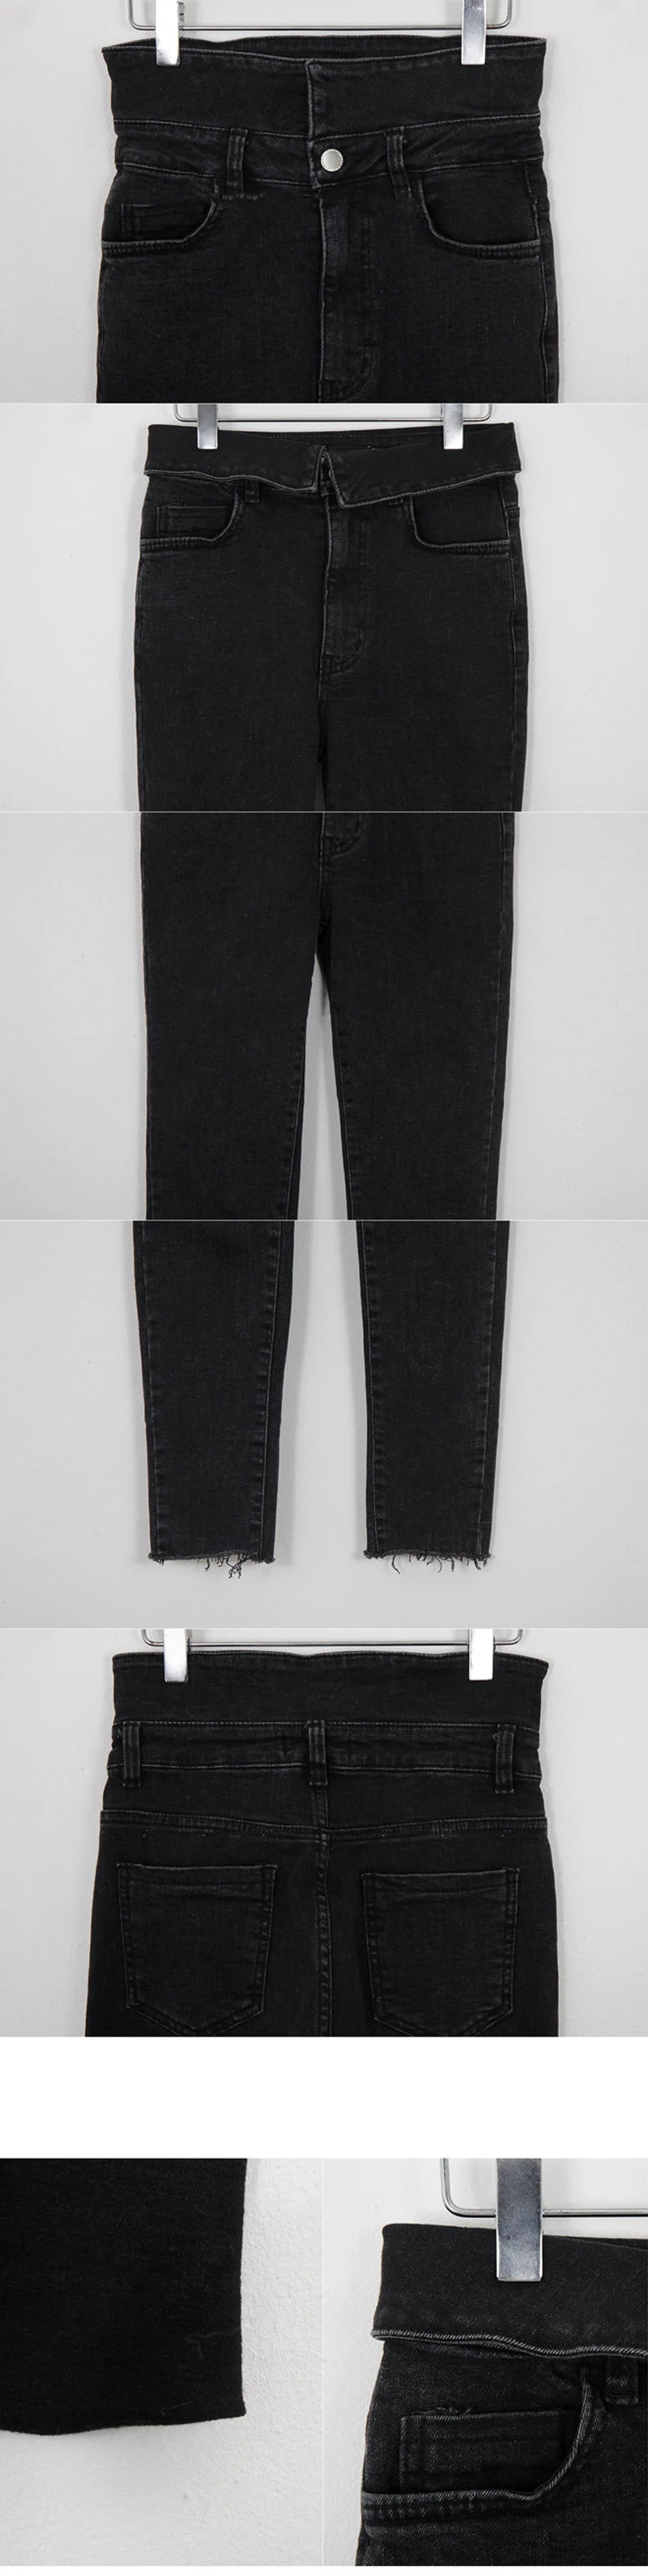 Стрейч отбортовки джинсы Для женщин Джеггинсы кисточкой Высокая талия женские брюки-Капри узкие зауженные джинсы